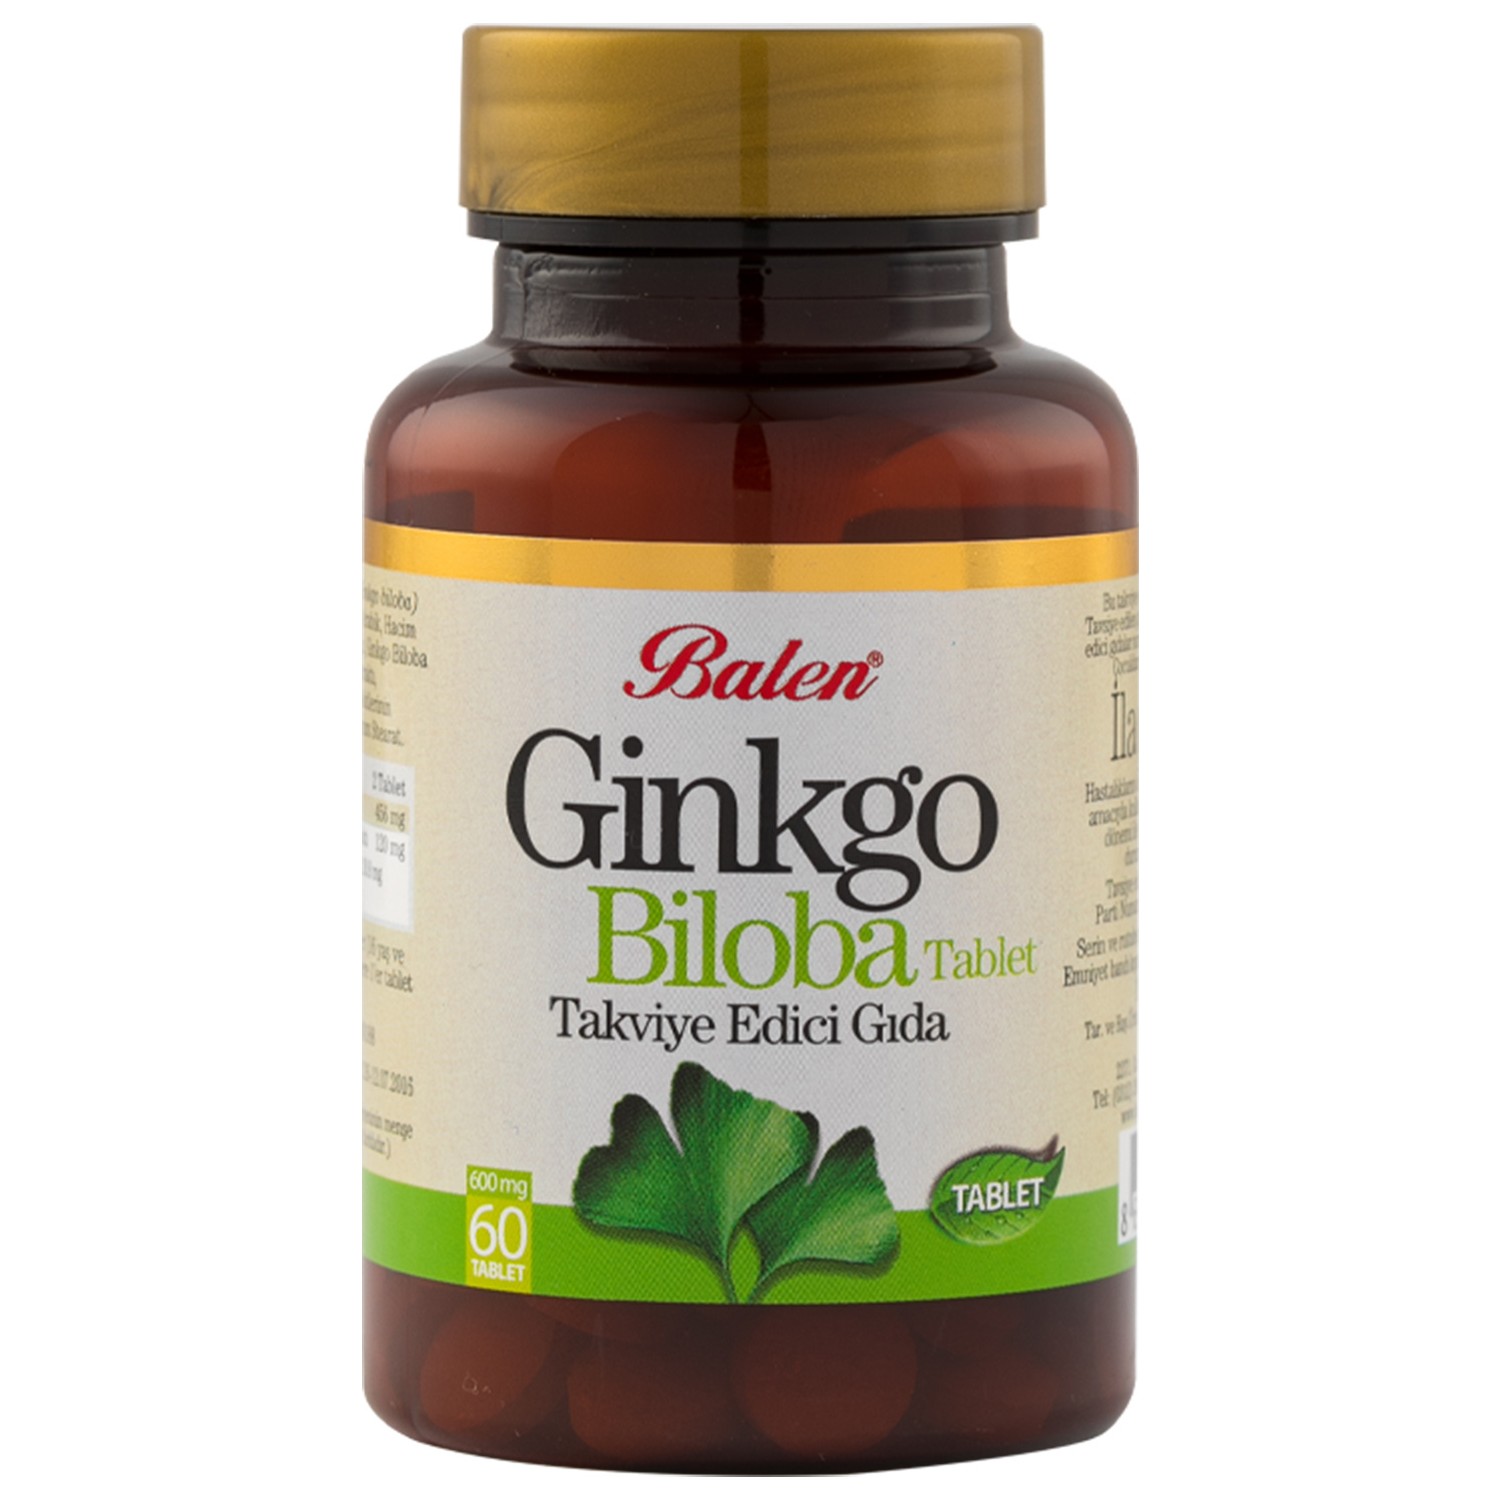 Активная добавка Balen Ginkgo Biloba, 60 капсул ginkgo biloba 600 mg 60 capsules ginkgo biloba capsules balen 60 tablets made in turkey